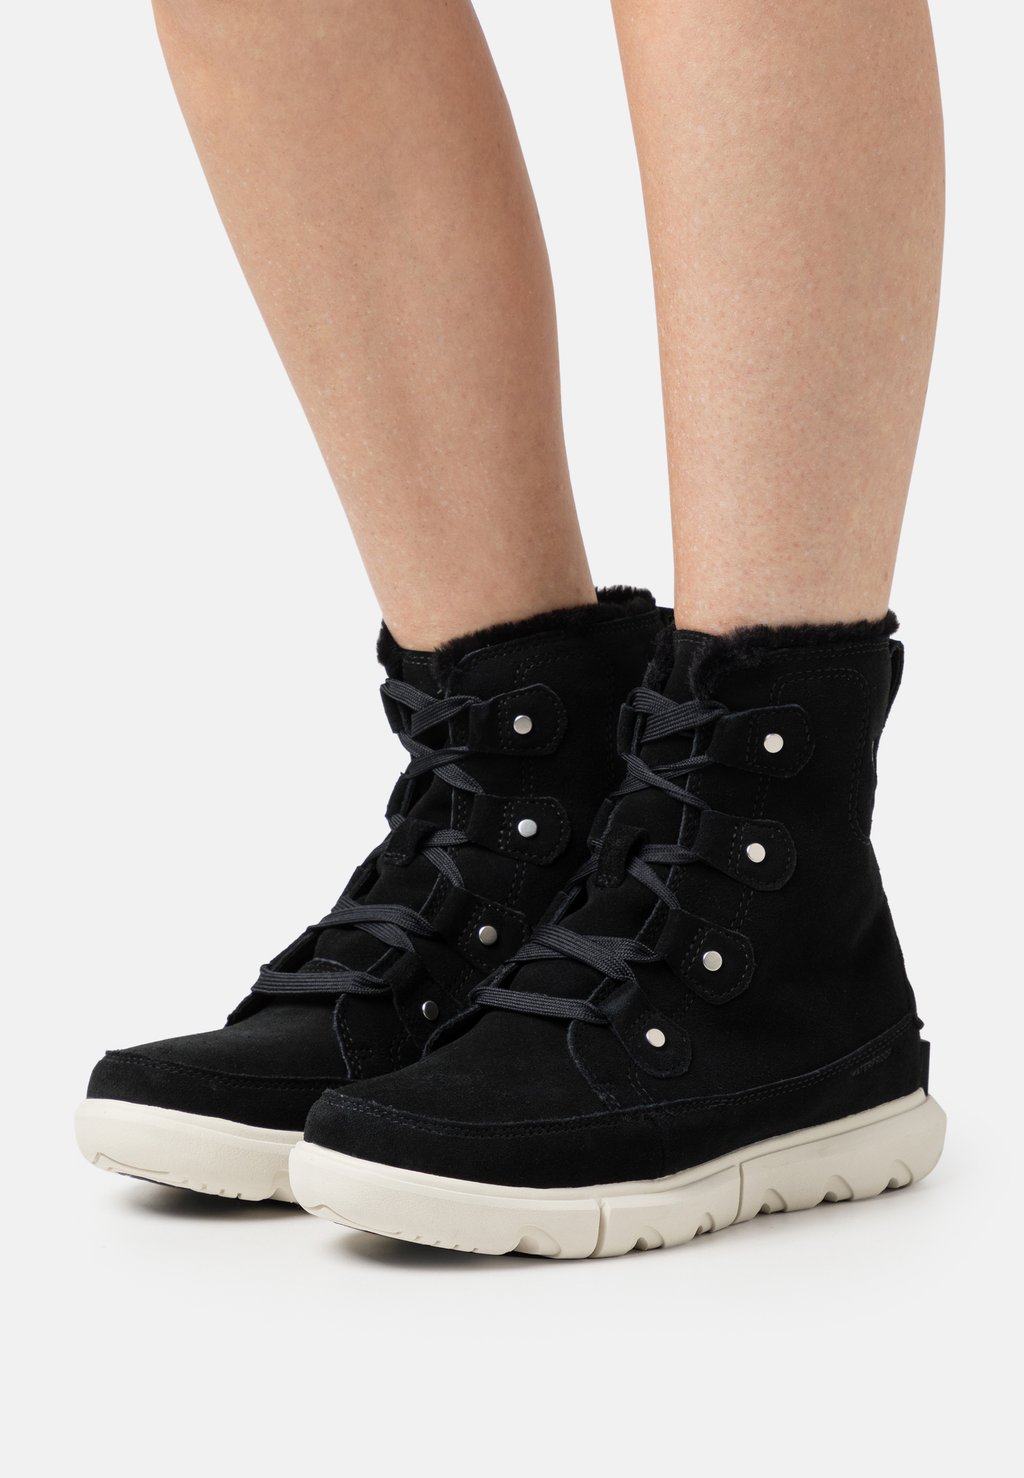 Зимние ботинки/сапоги EXPLORER NEXT JOAN WP Sorel, цвет black